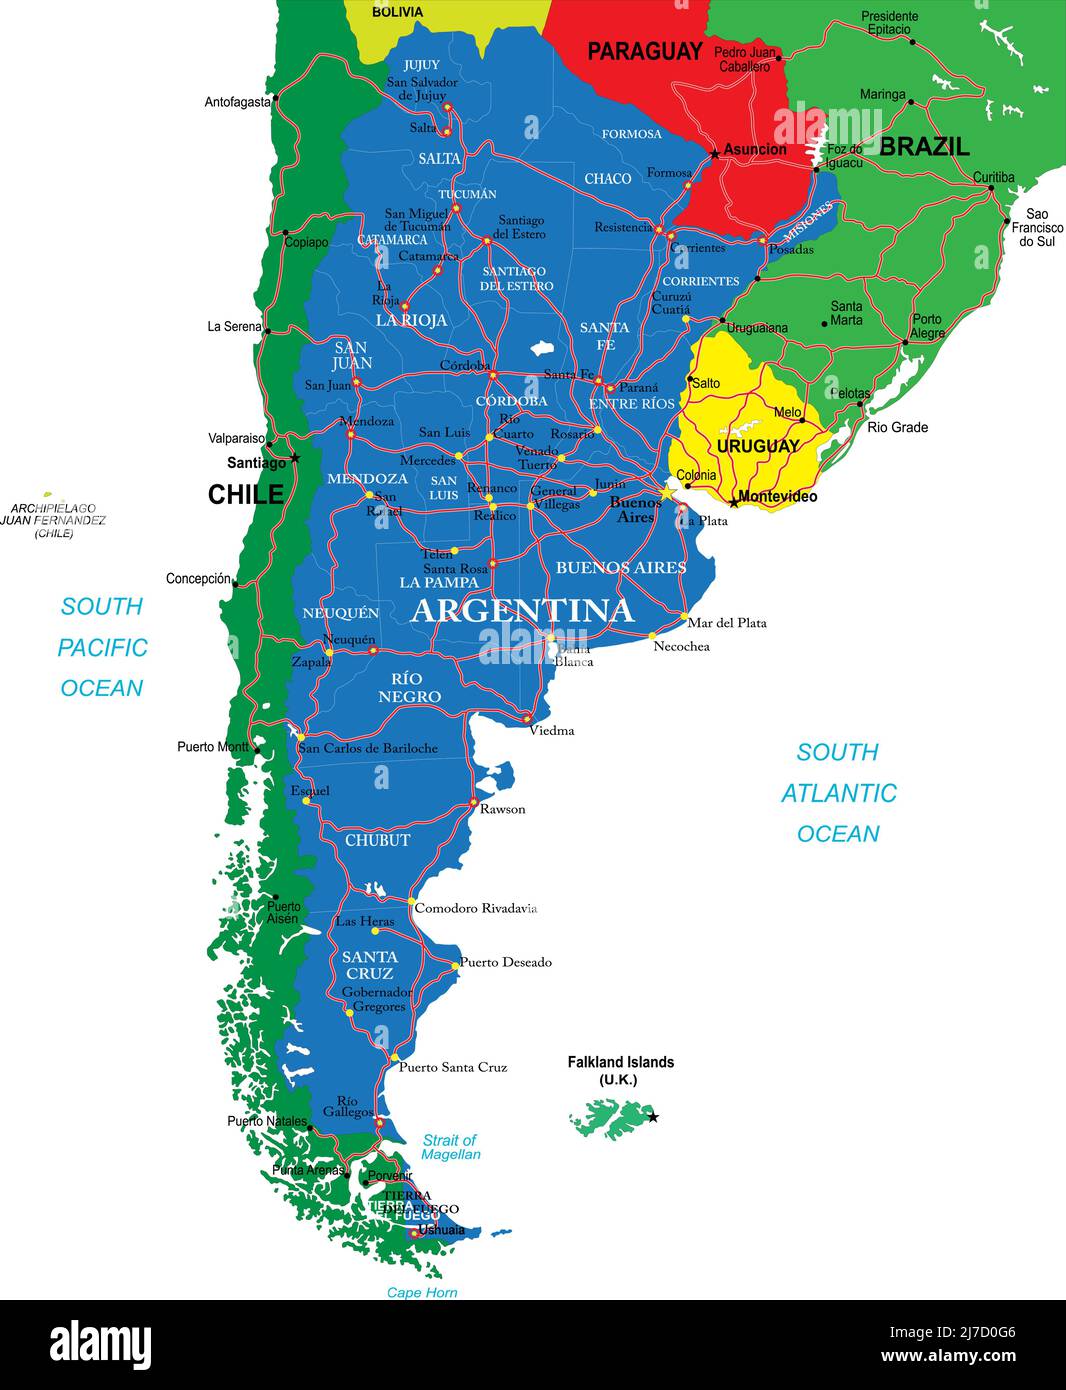 Hochdetaillierte Vektorkarte Argentinien mit Verwaltungsregionen, Hauptstädten und Straßen. Stock Vektor